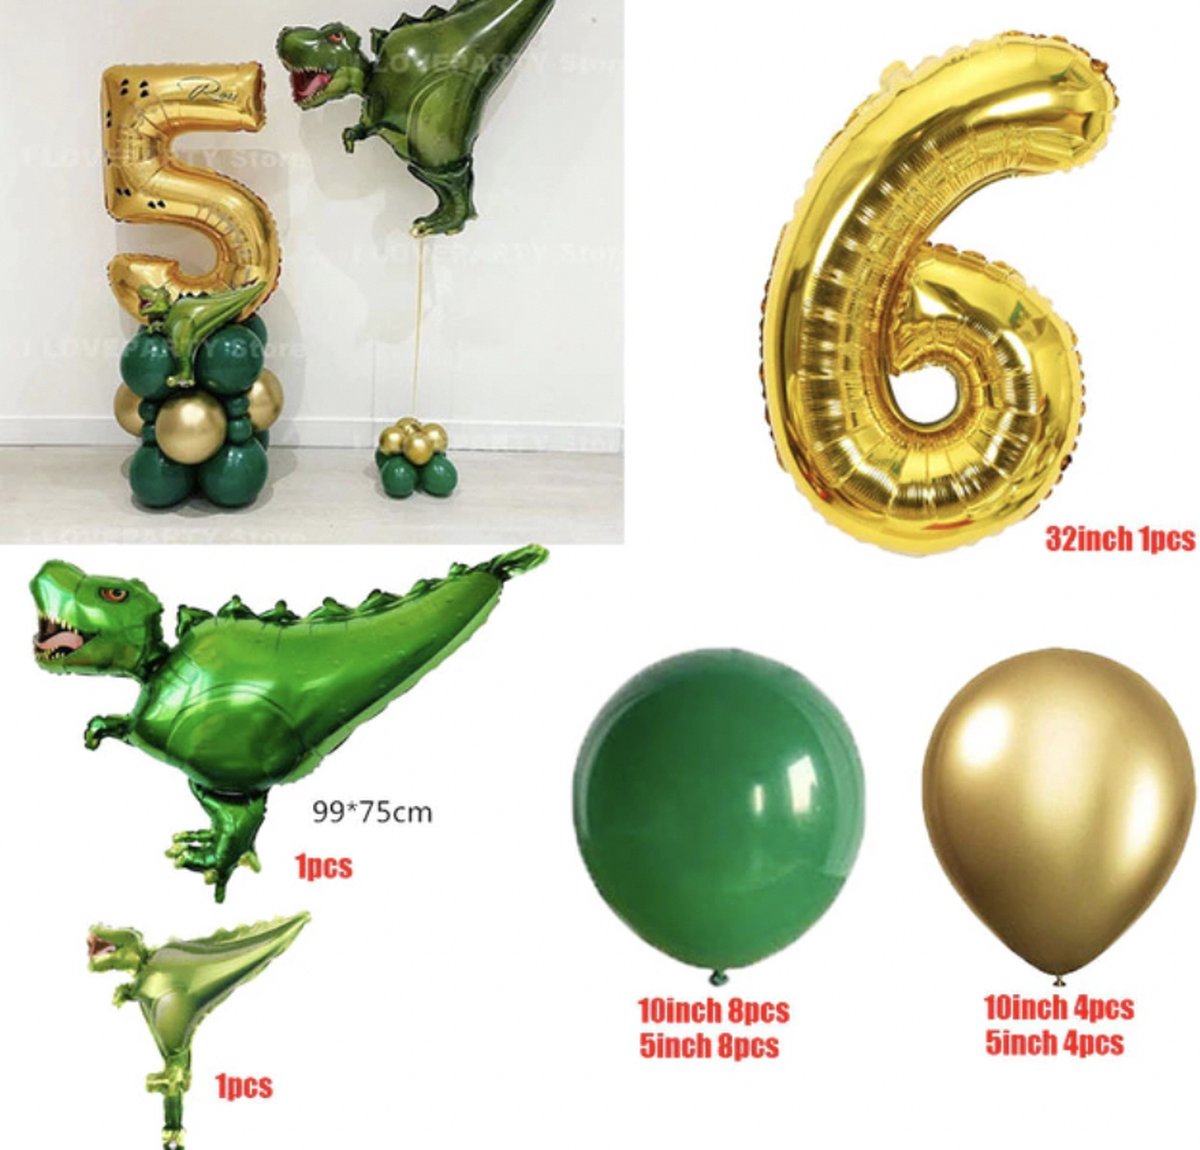 Dinosaurus Verjaardag Ballonnen - Leeftijd: 6 jaar - Dino Ballonnen Set - Feestpakket / Verjaardag Versiering - Feestversiering Thema: Dino - Themafeest - Kinder Verjaardag - Ballonnen / Folieballon / Heliumballon / Leeftijdballon